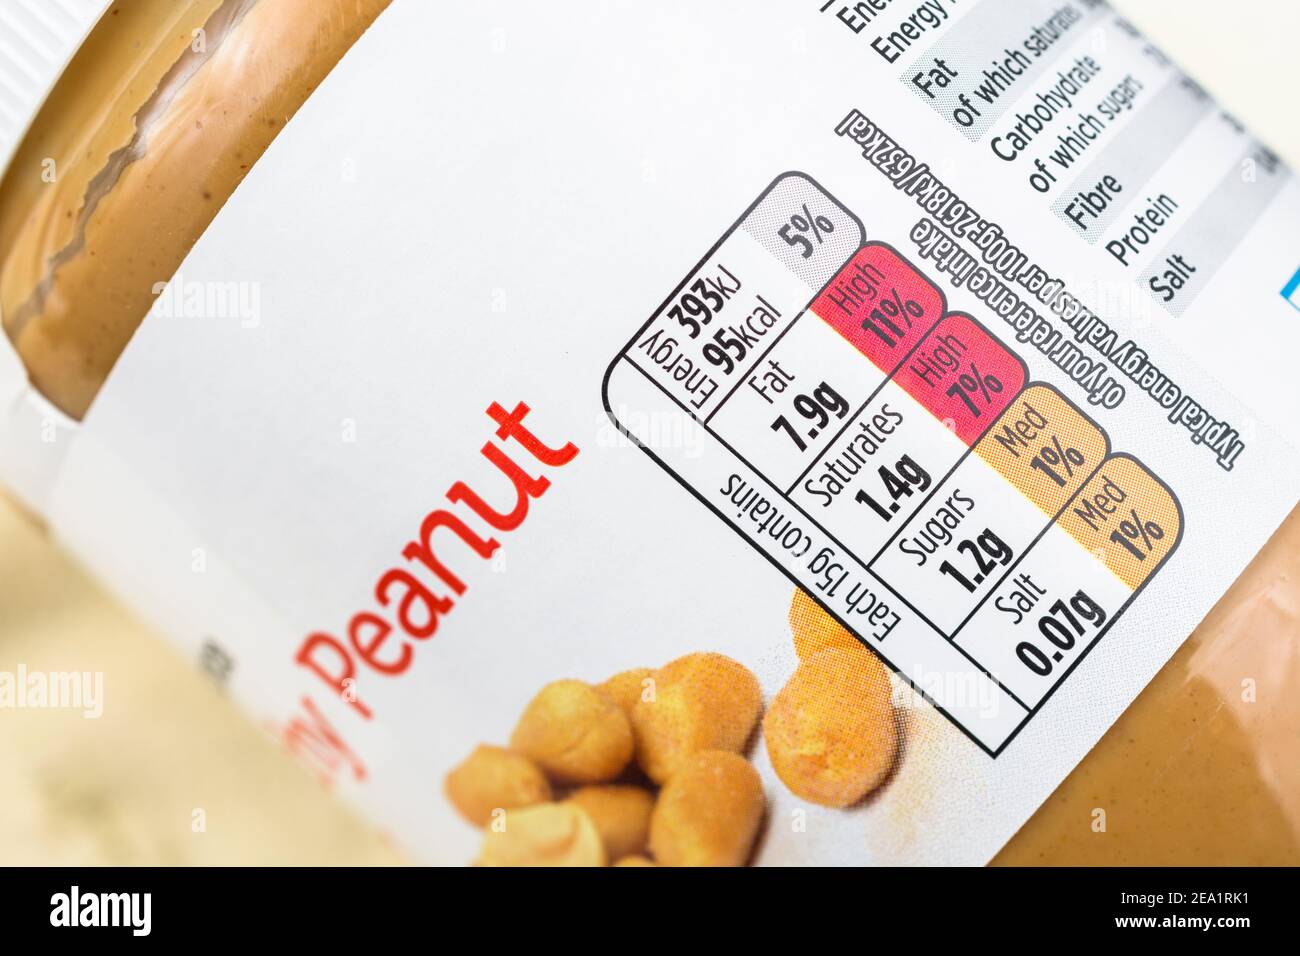 Vasca di plastica di burro di arachidi ASDA. Per etichette di ingredienti alimentari, etichettatura nutrizionale, informazioni sugli alimenti, consigli sulle allergie, imballaggi in plastica per alimenti. Foto Stock